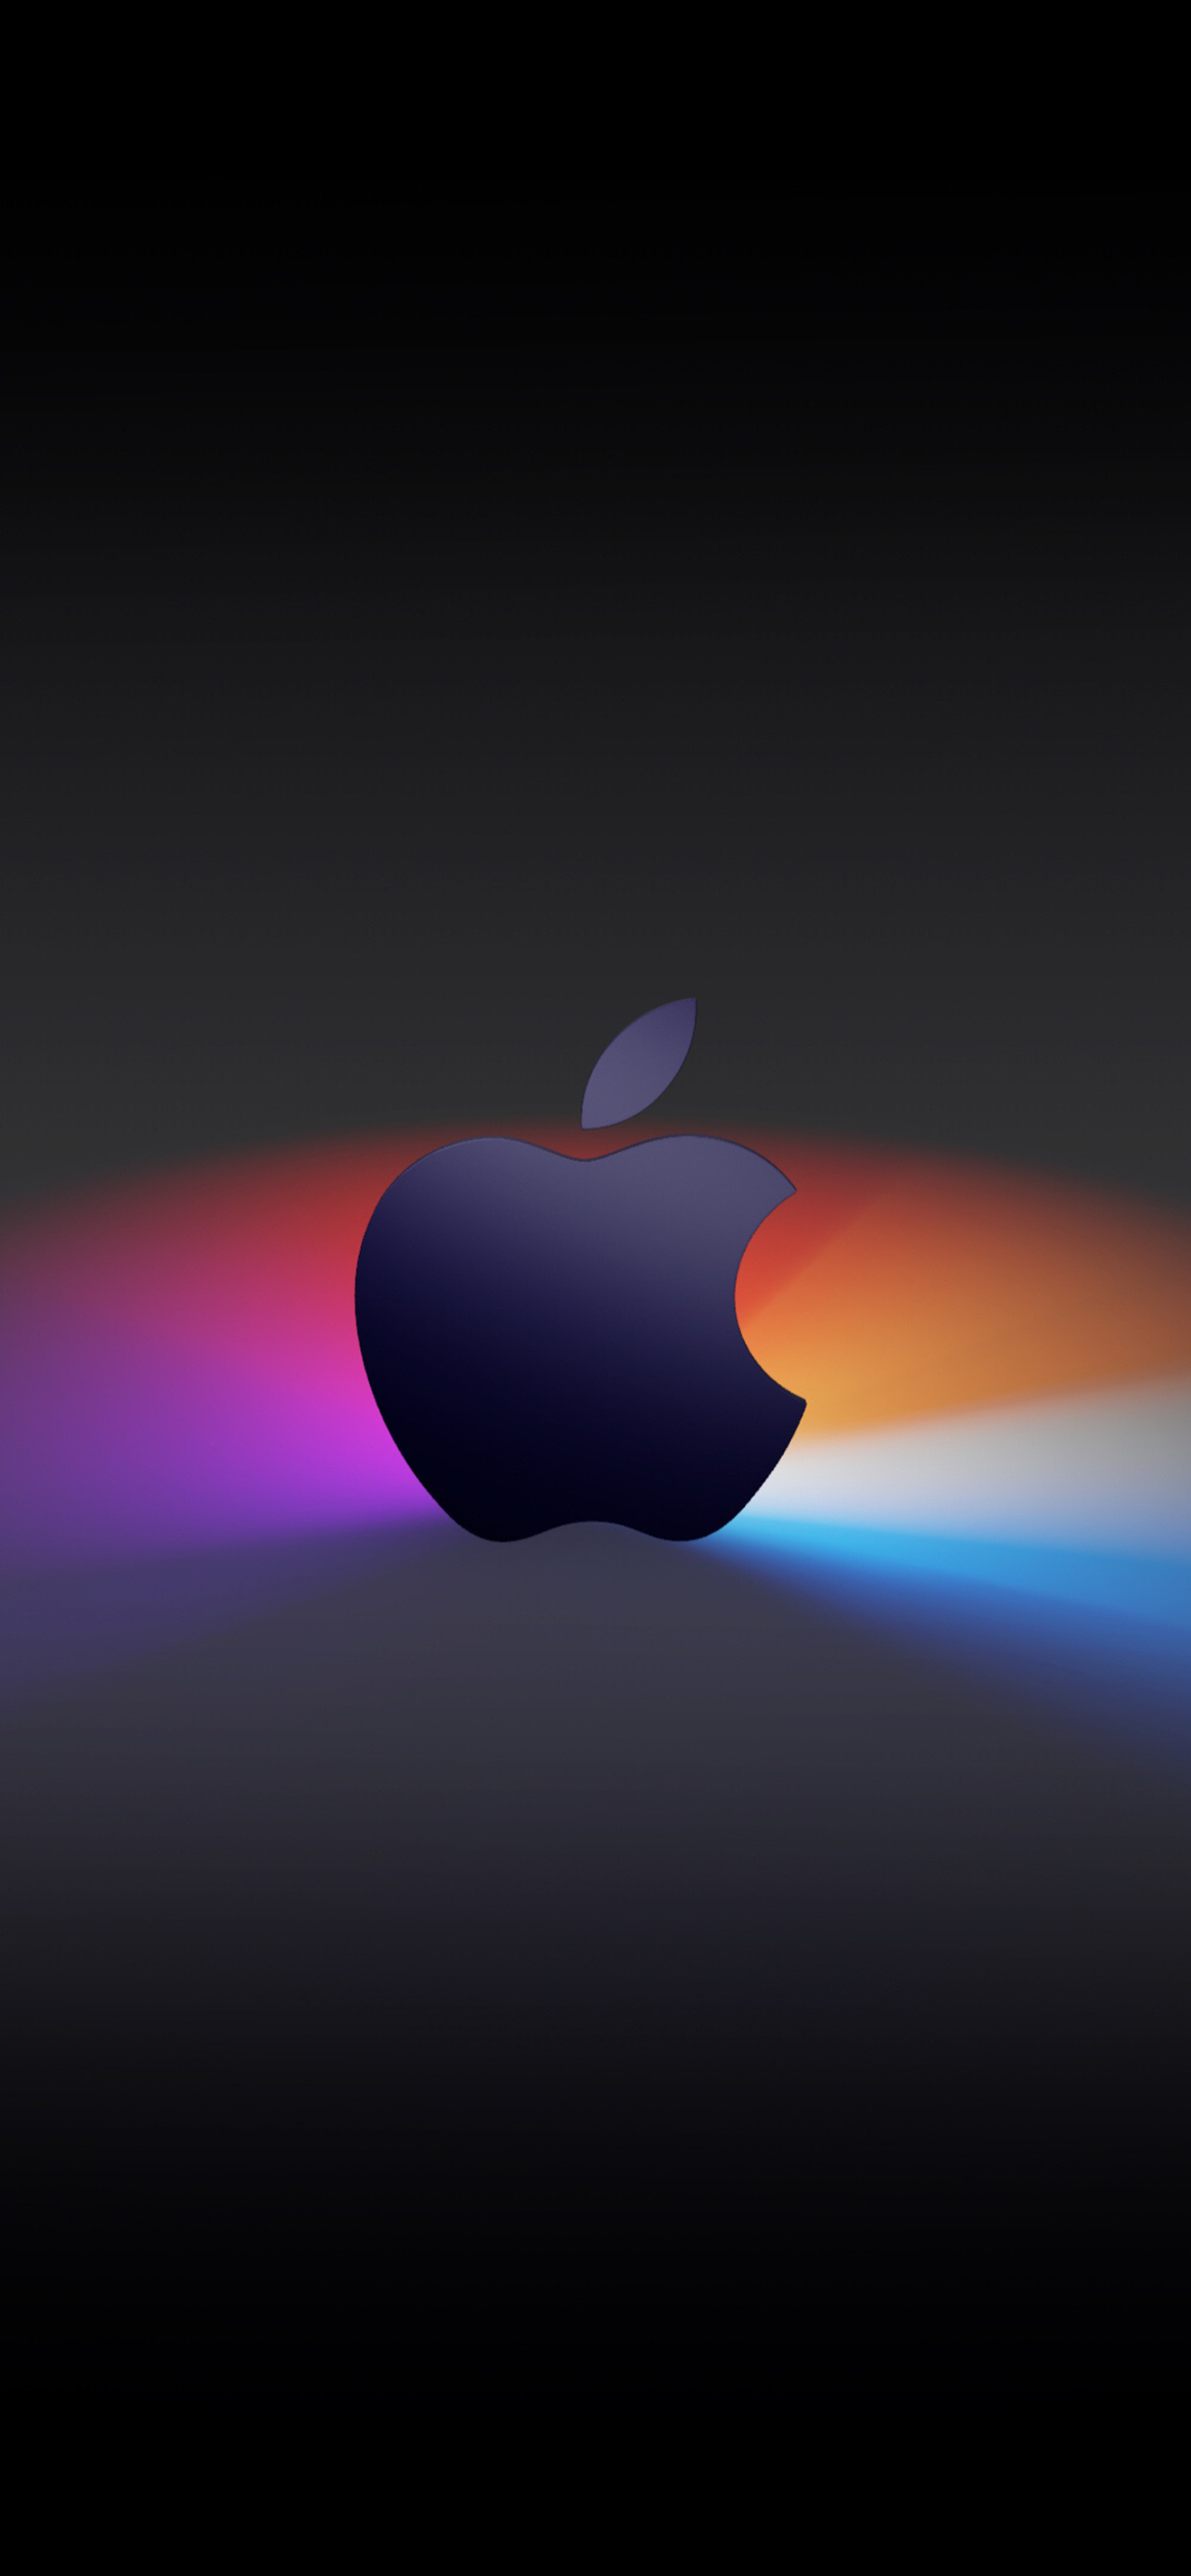 11.11苹果发布会邀请函壁纸下载 iPhone12使用效果不错